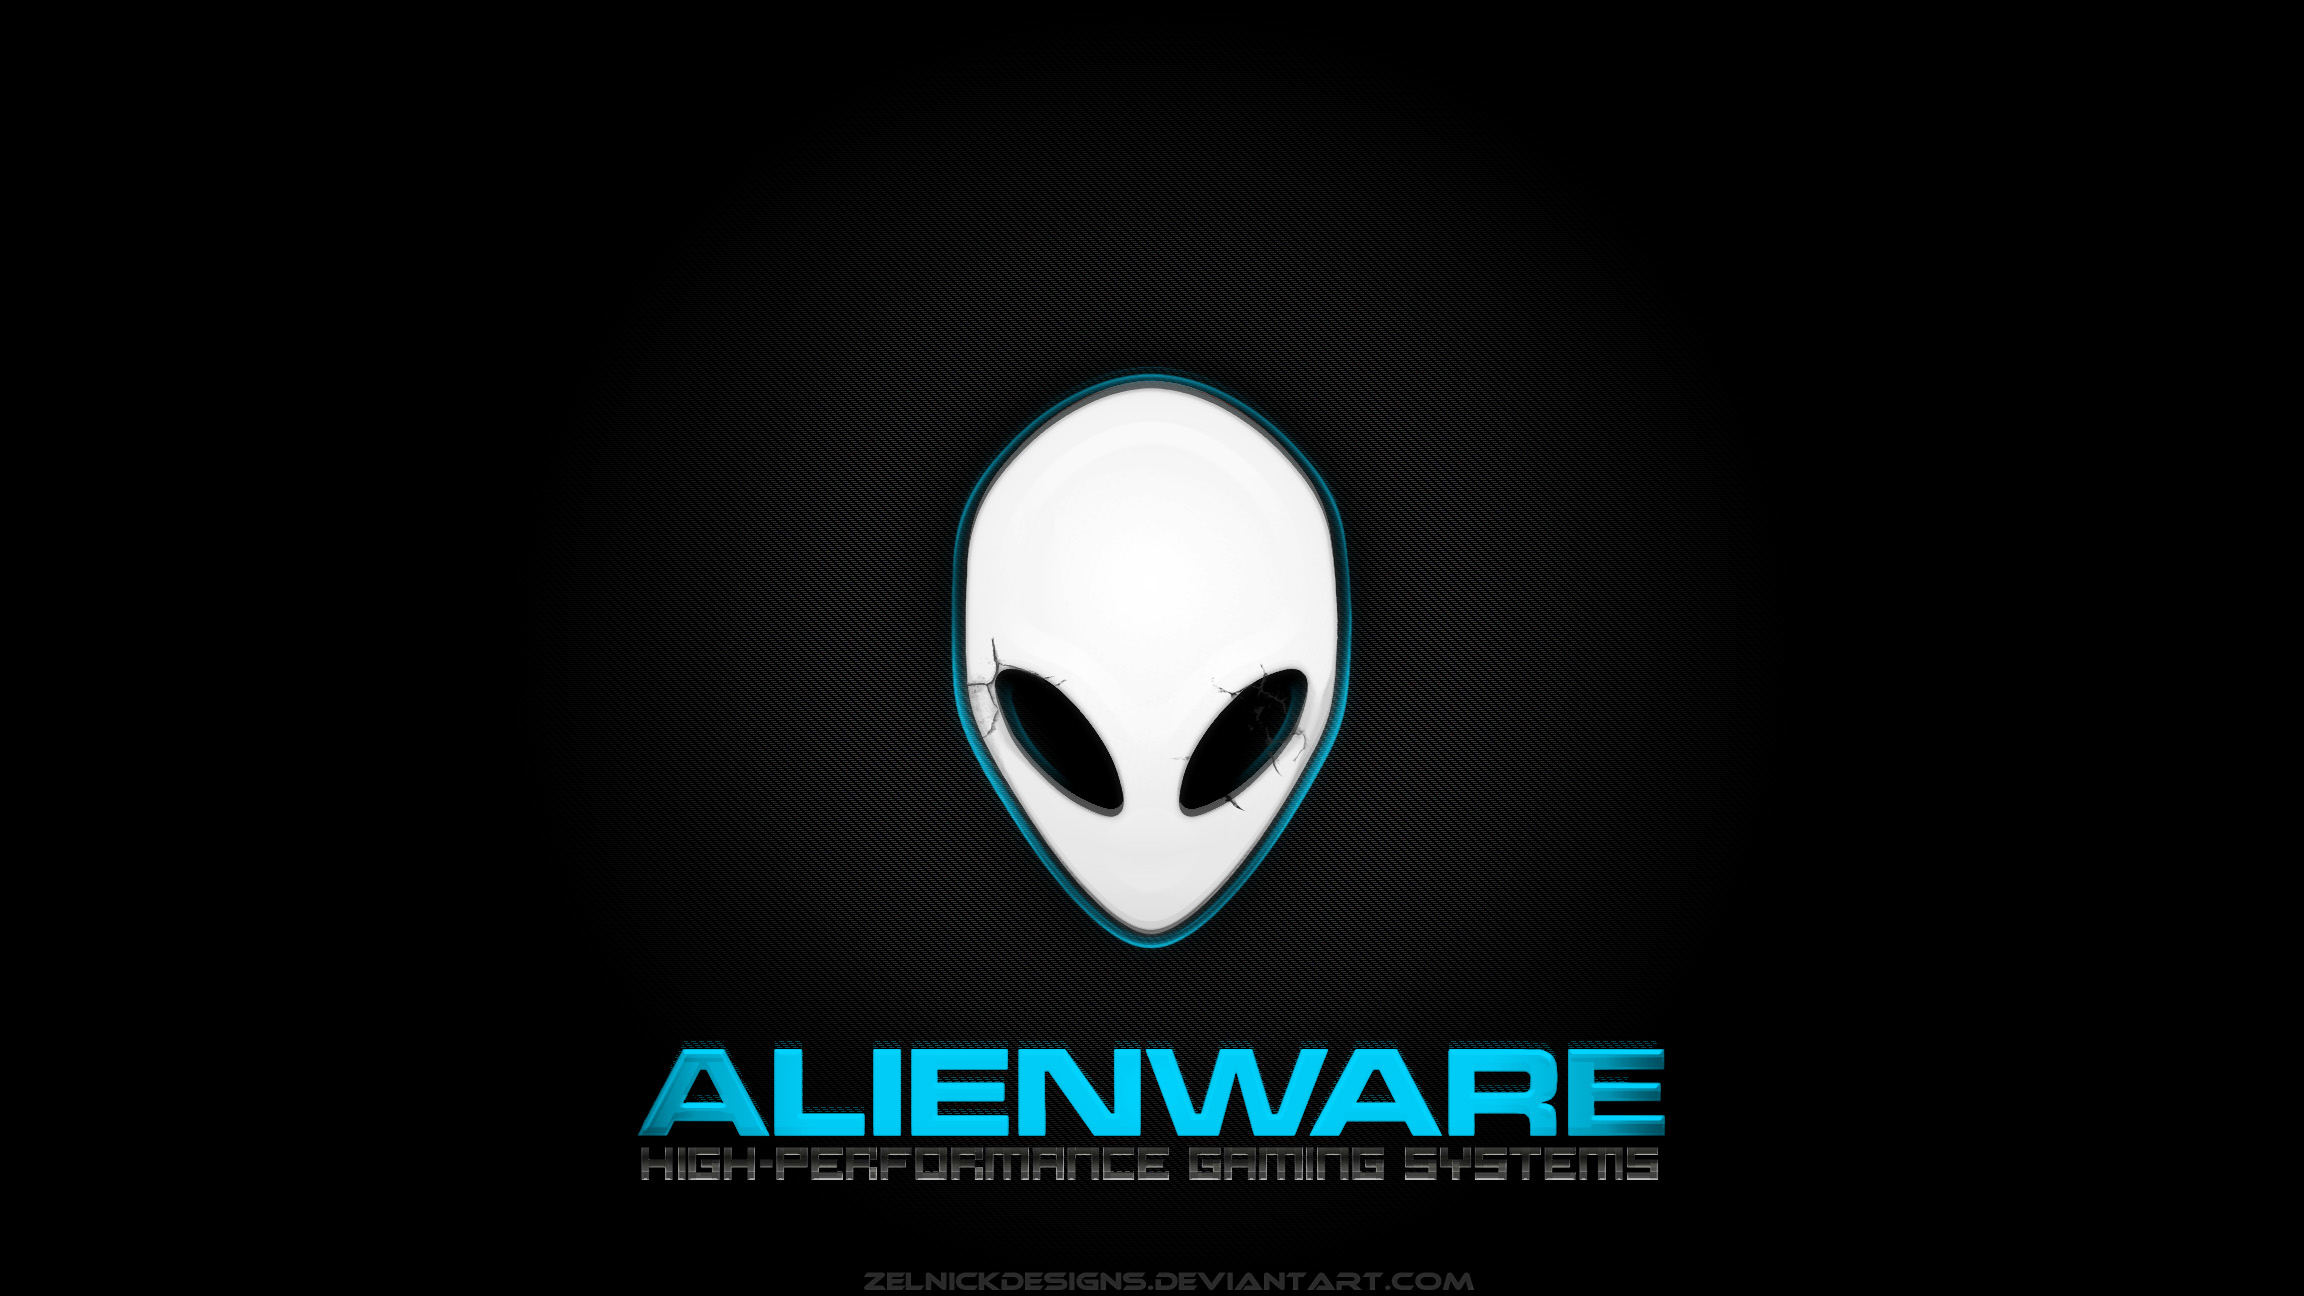 Hãy tải ngay gói hình nền Alienware của chúng tôi để trang trí cho máy tính của bạn với những hình nền tuyệt đẹp và độc đáo. Bộ sưu tập này sẽ khiến màn hình của bạn trở nên sống động và ấn tượng.